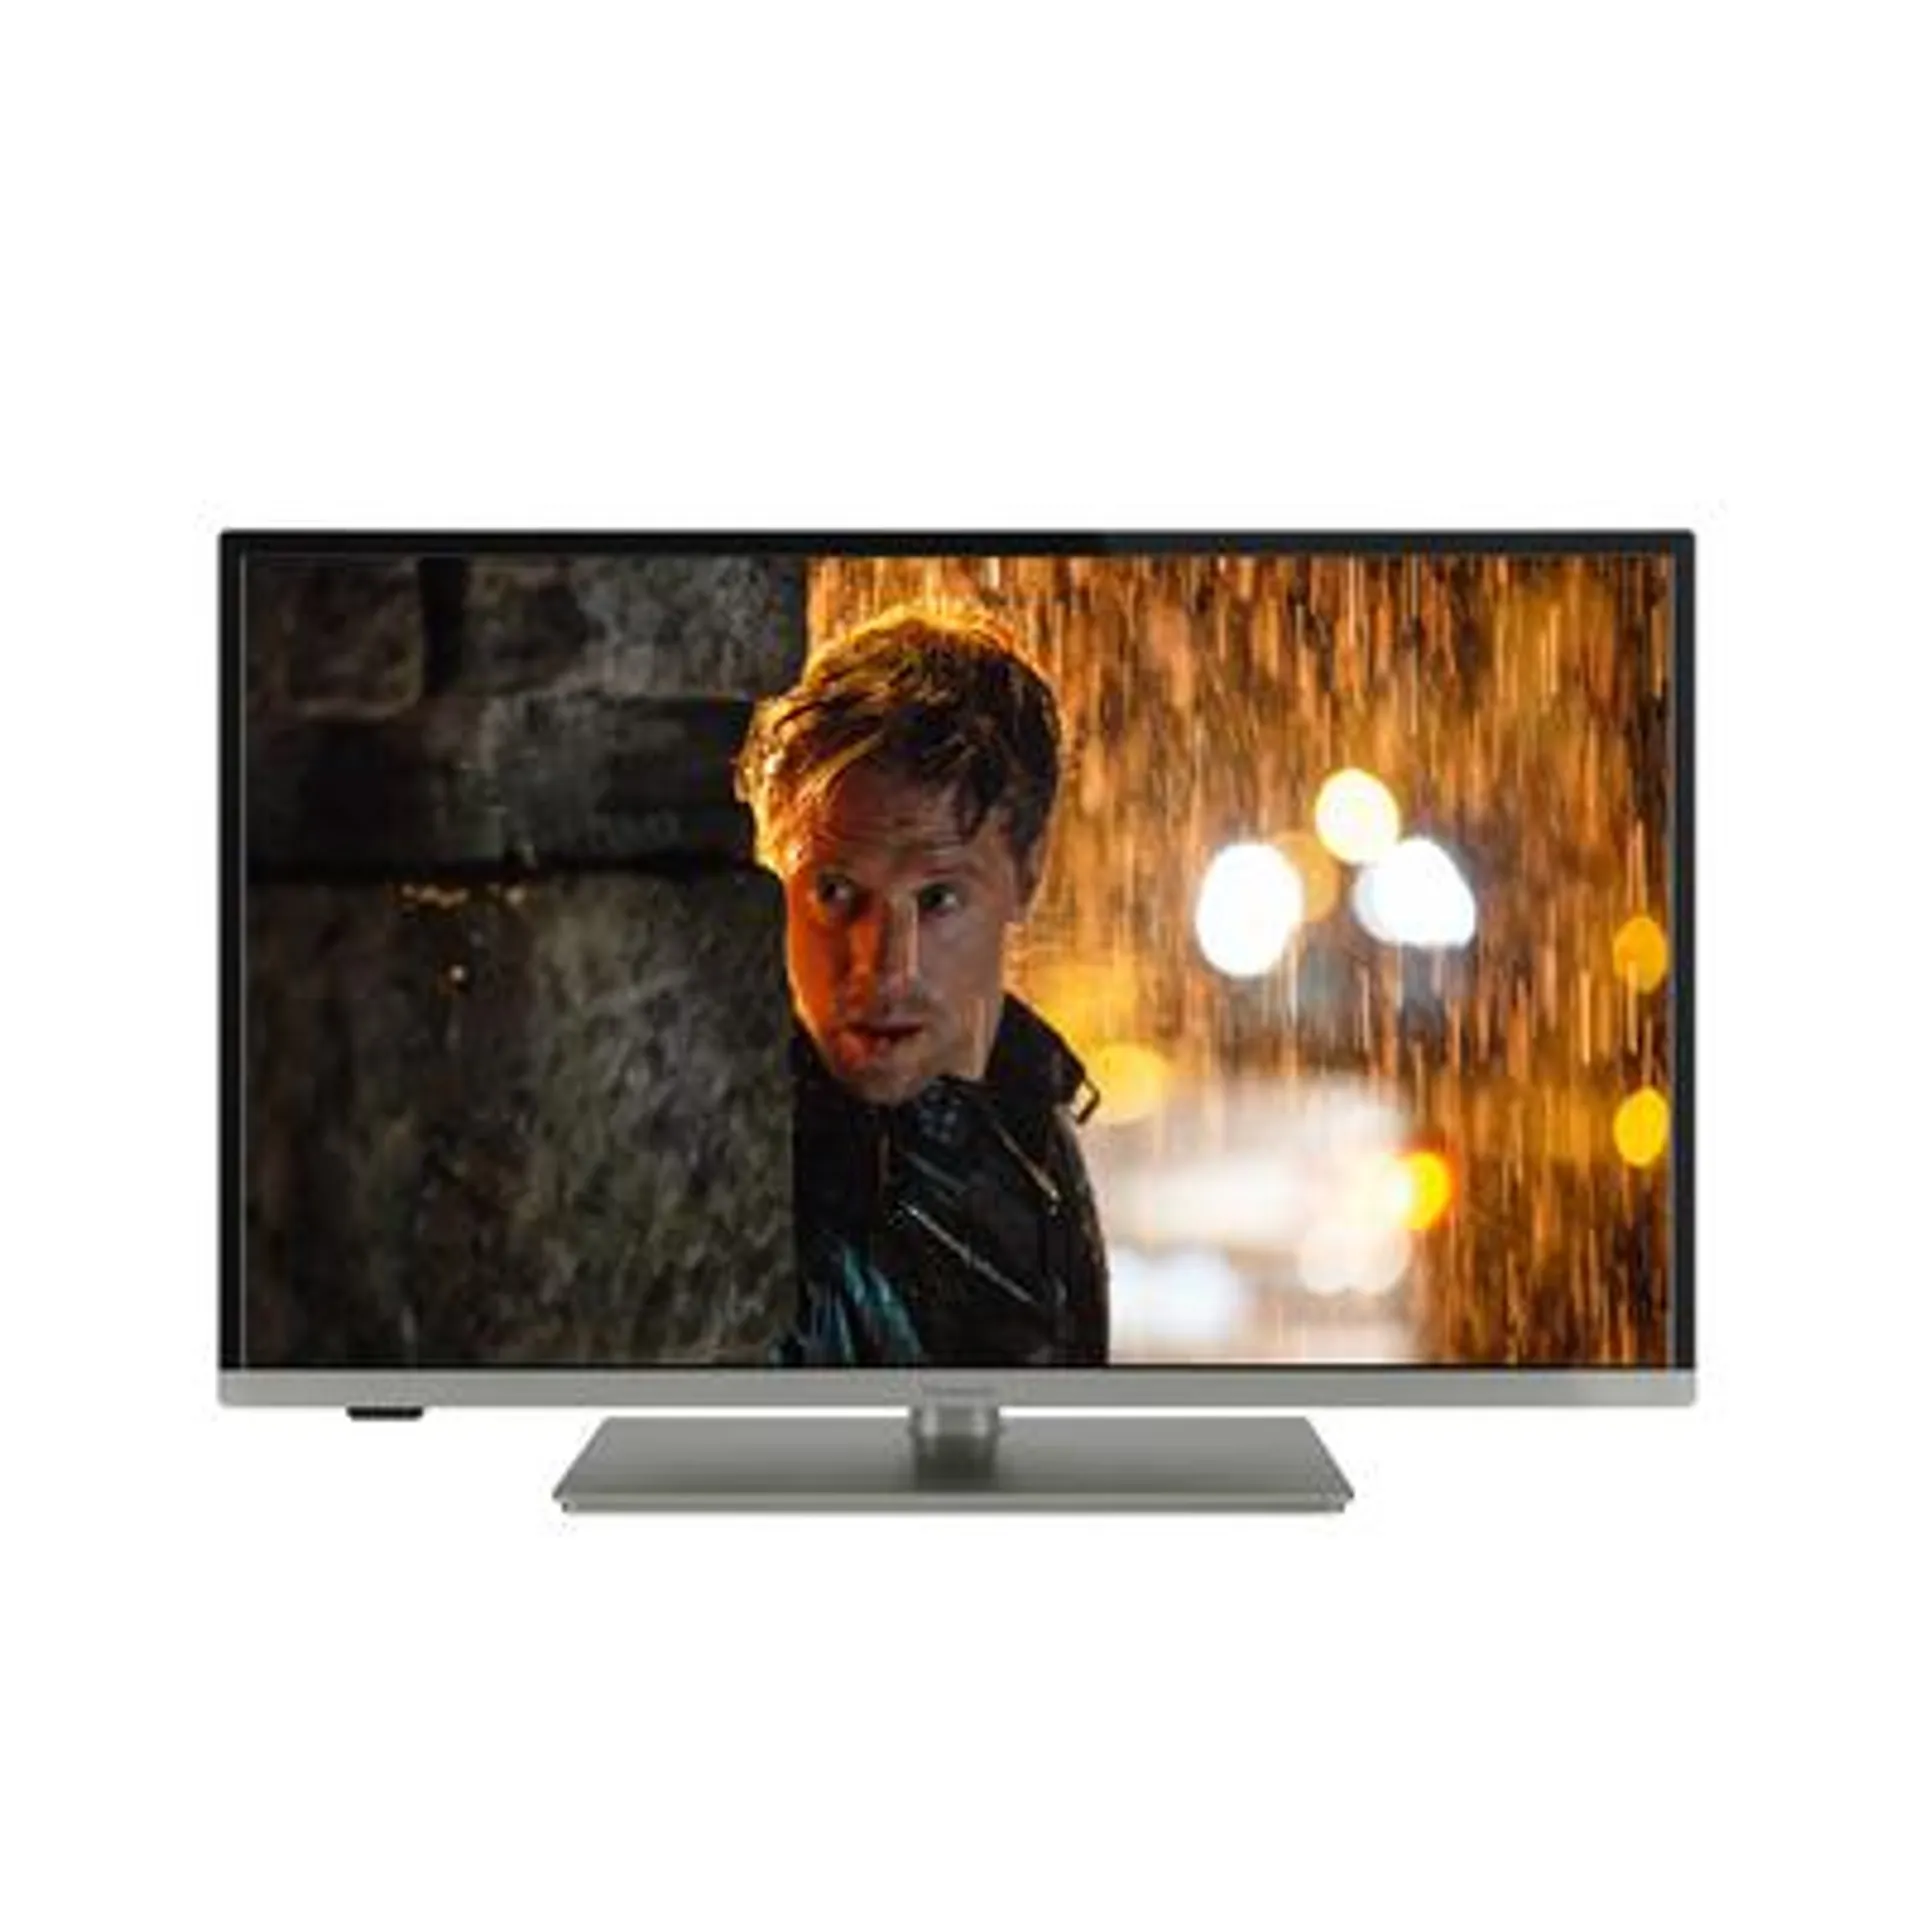 Dimensioni schermo (pollici) 24 - Smart Tv - Tecnologia HD READY